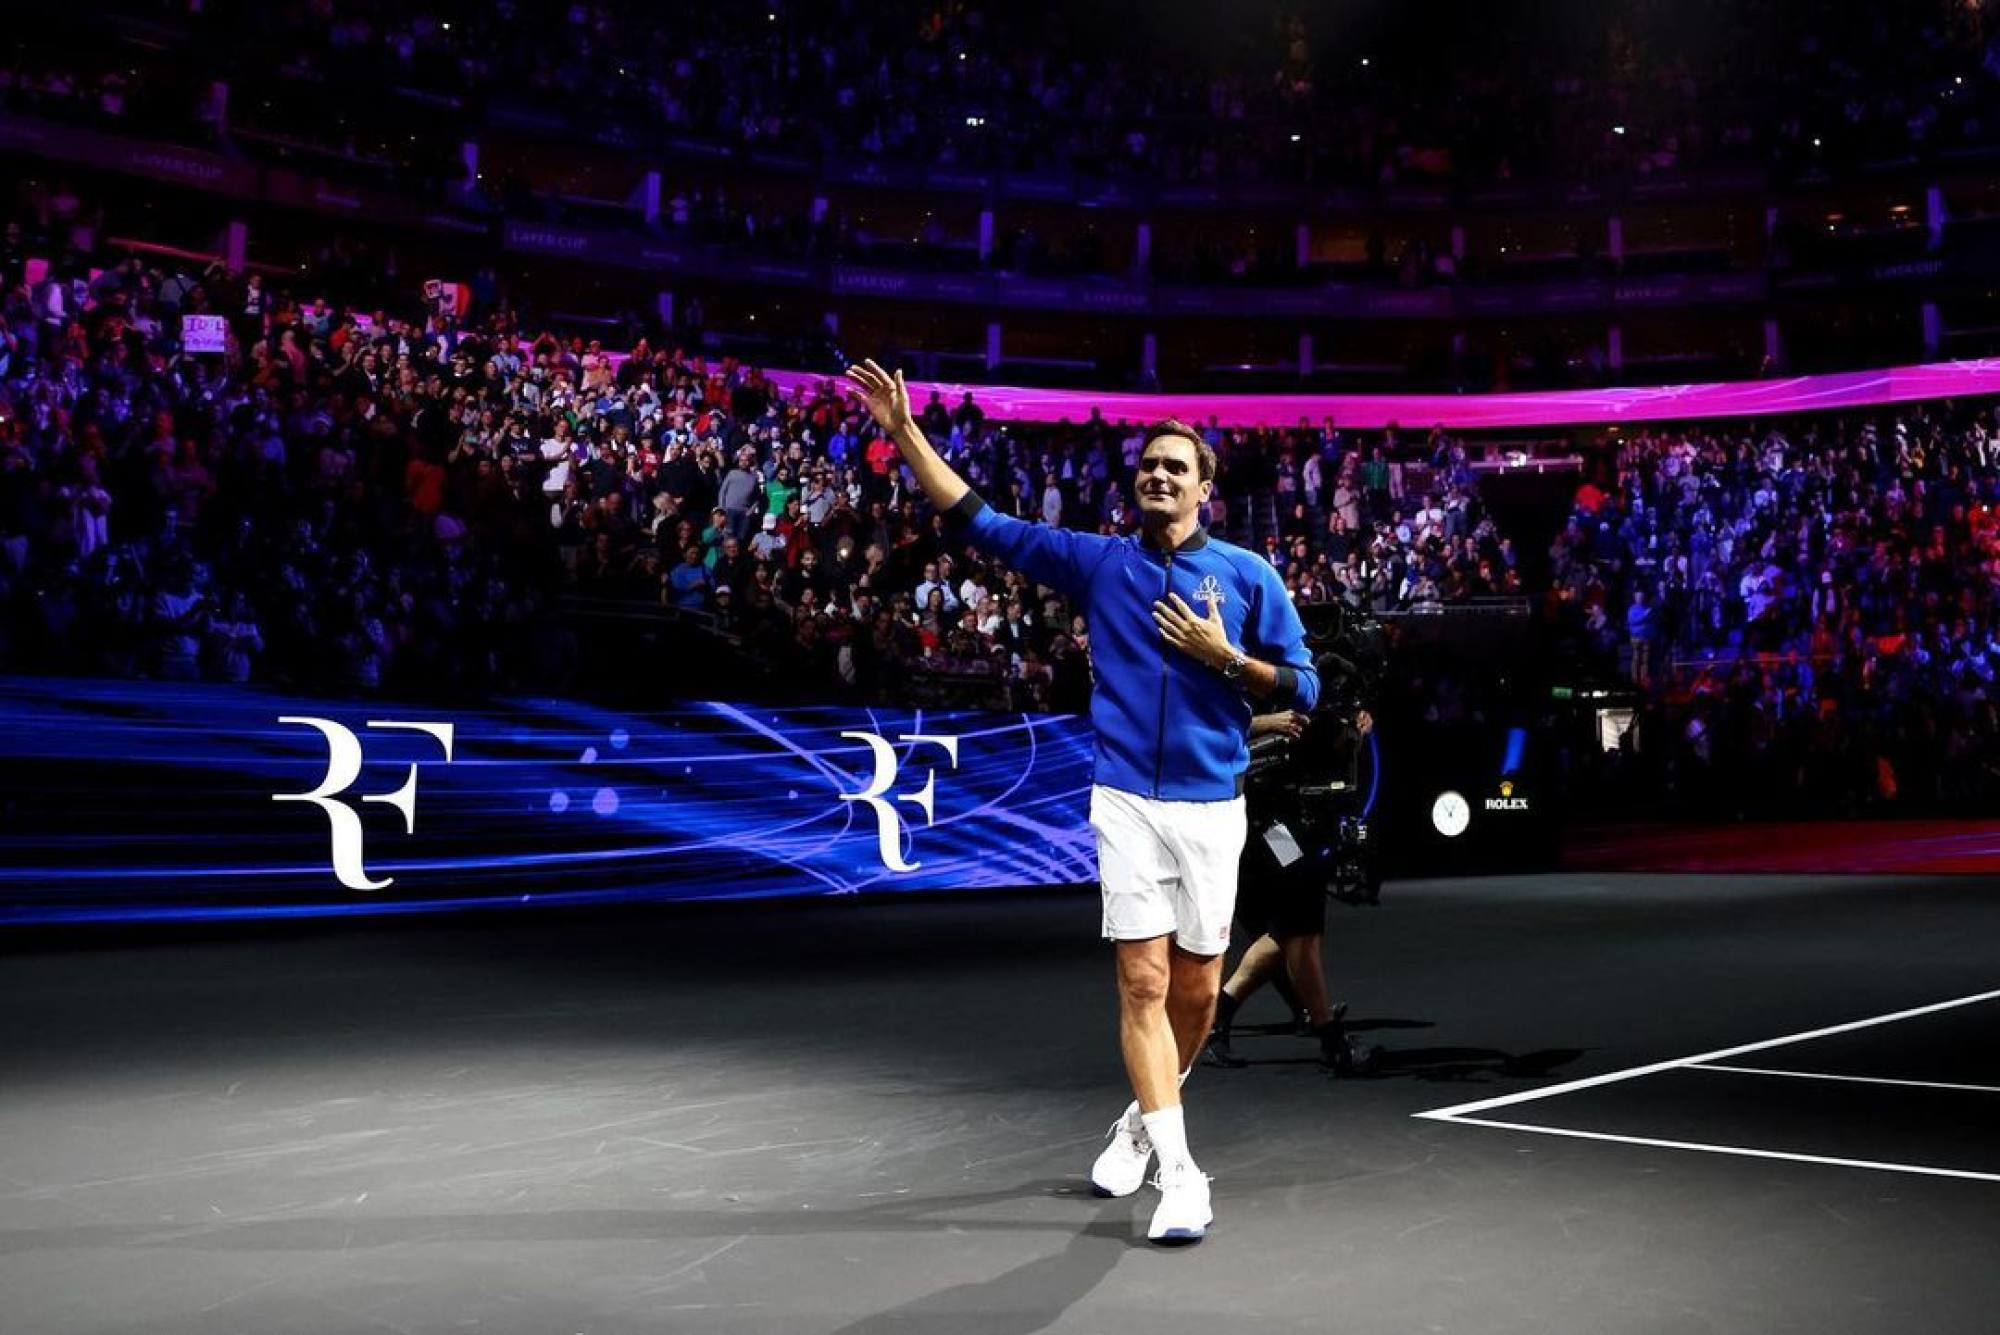 Roger Federer (@rogerfederer) • Instagram photos and videos